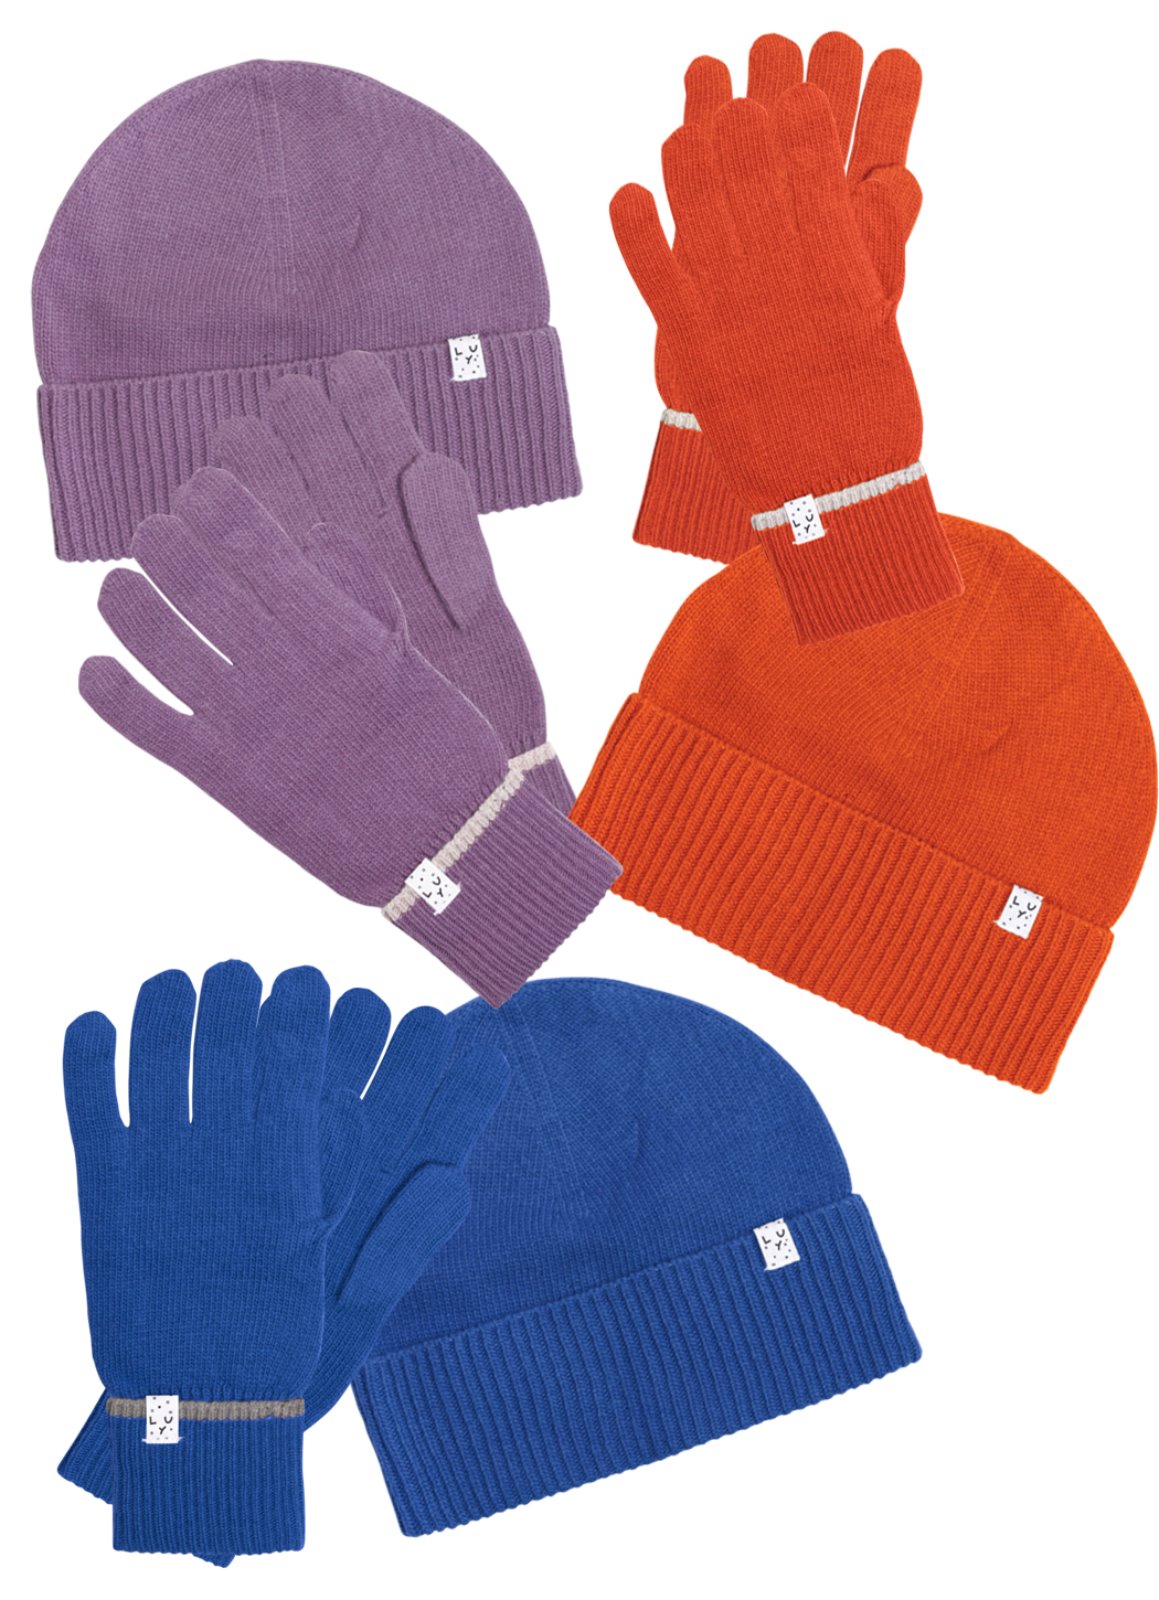 WG.Knit Beanie &amp; Gloves set  Orange / Blue / purple  [45,000 -&gt; 19,000]